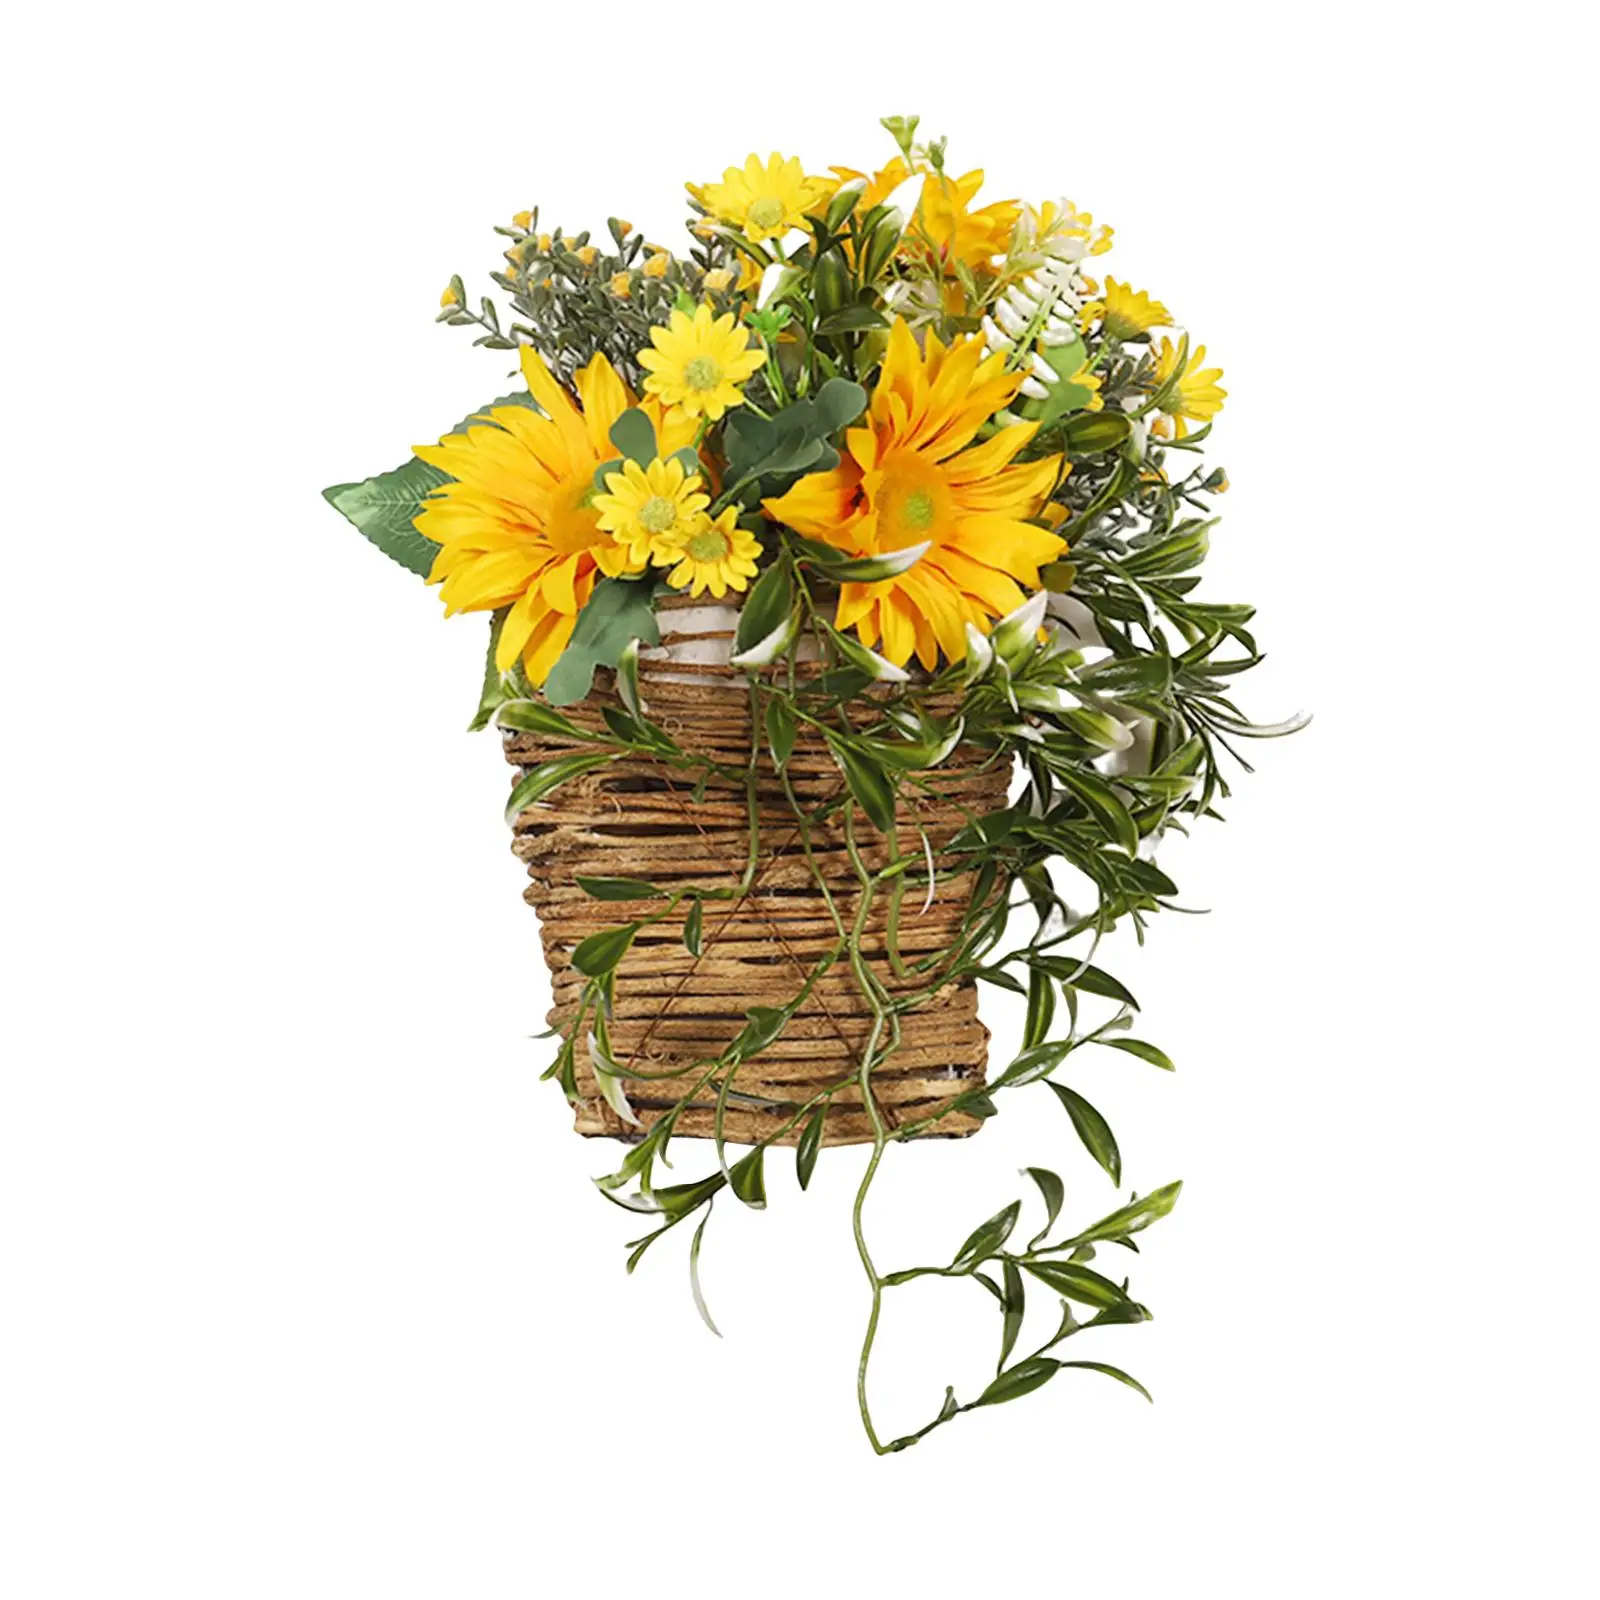 Flower Basket Wreath Sunflowers Wreath Welcome Sign Front Door Spring Wreath